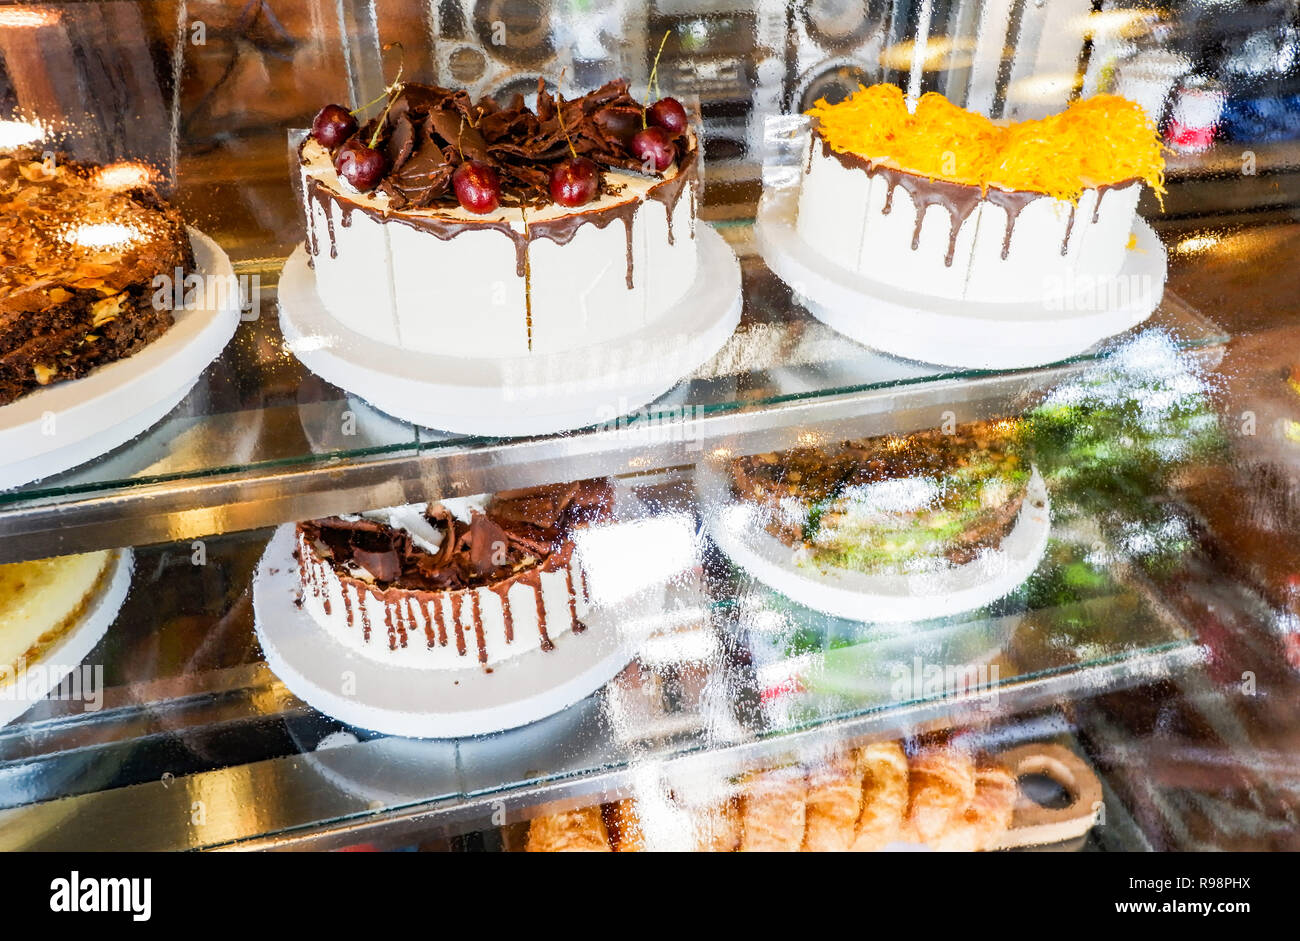 Kuchen im Schaufenster/Fach Kuchen im Glas Anzeige bei Store Bäckerei Konditorei - Showcase mit Süßigkeiten Schokolade Kuchen selektiven Fokus Stockfoto